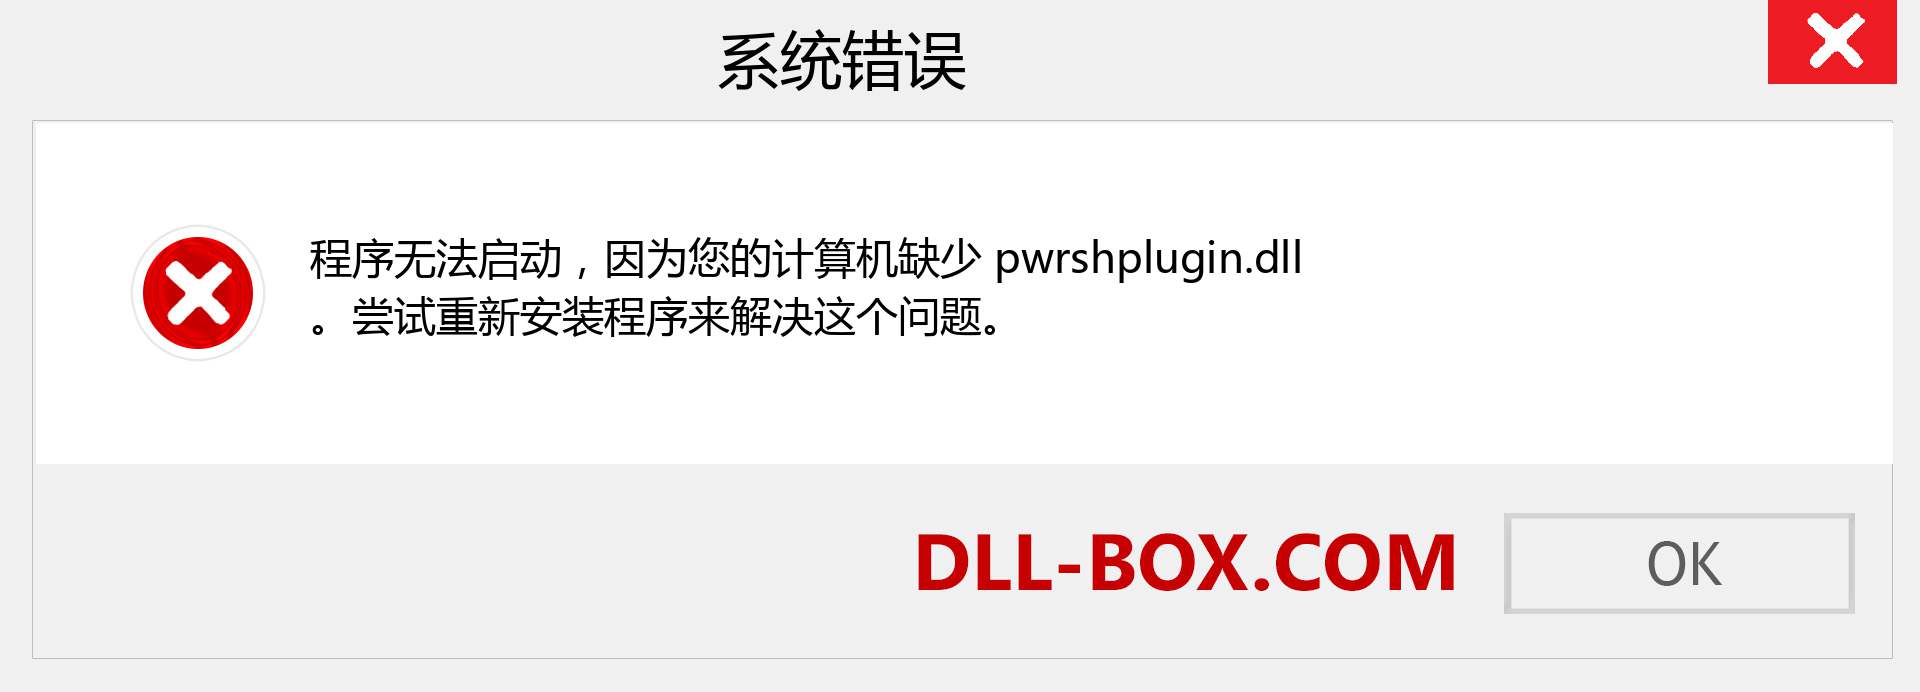 pwrshplugin.dll 文件丢失？。 适用于 Windows 7、8、10 的下载 - 修复 Windows、照片、图像上的 pwrshplugin dll 丢失错误